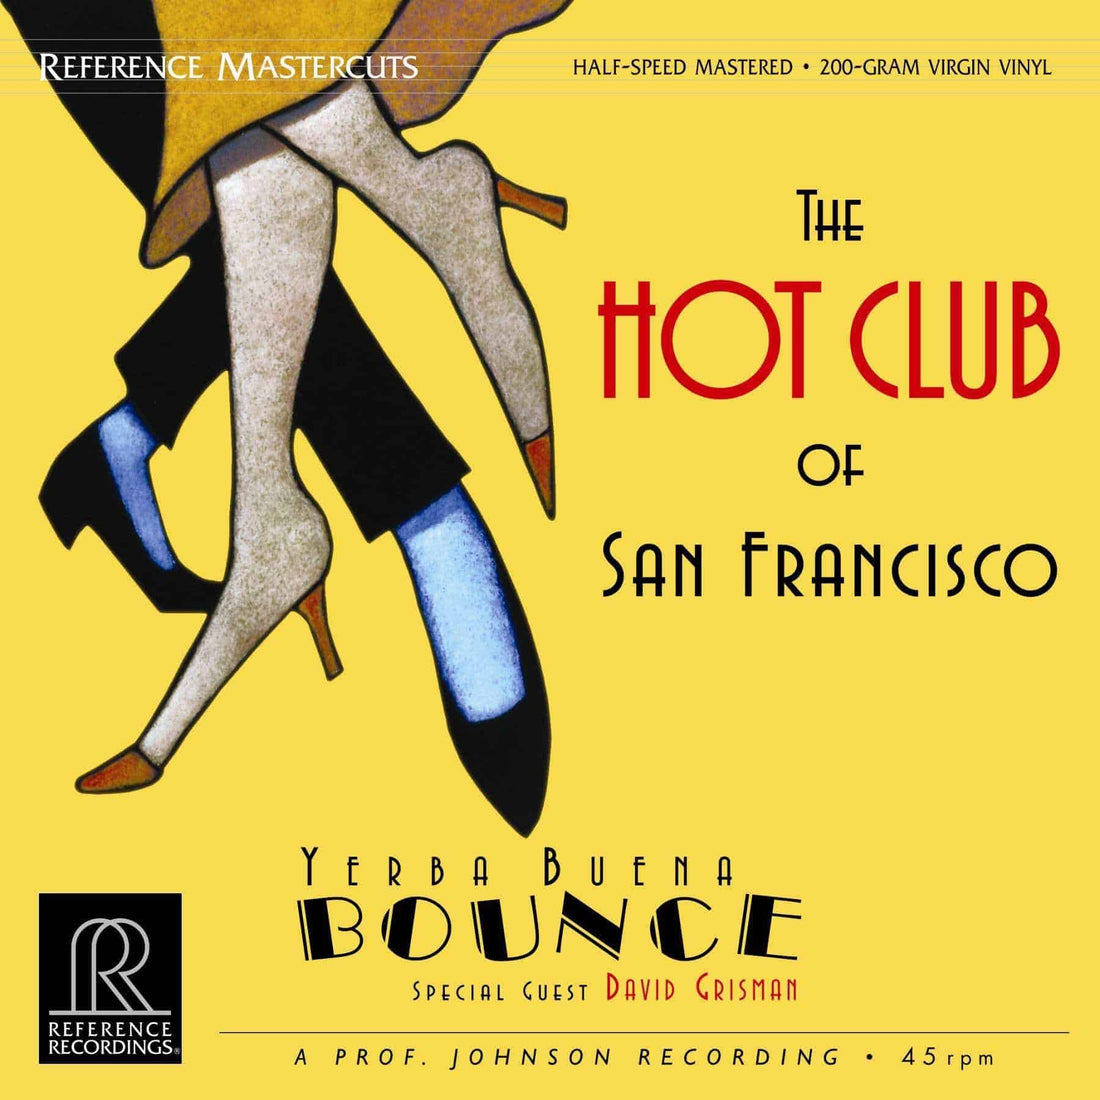 YERBA BUENA BOUNCE | The Hot Club of San Francisco